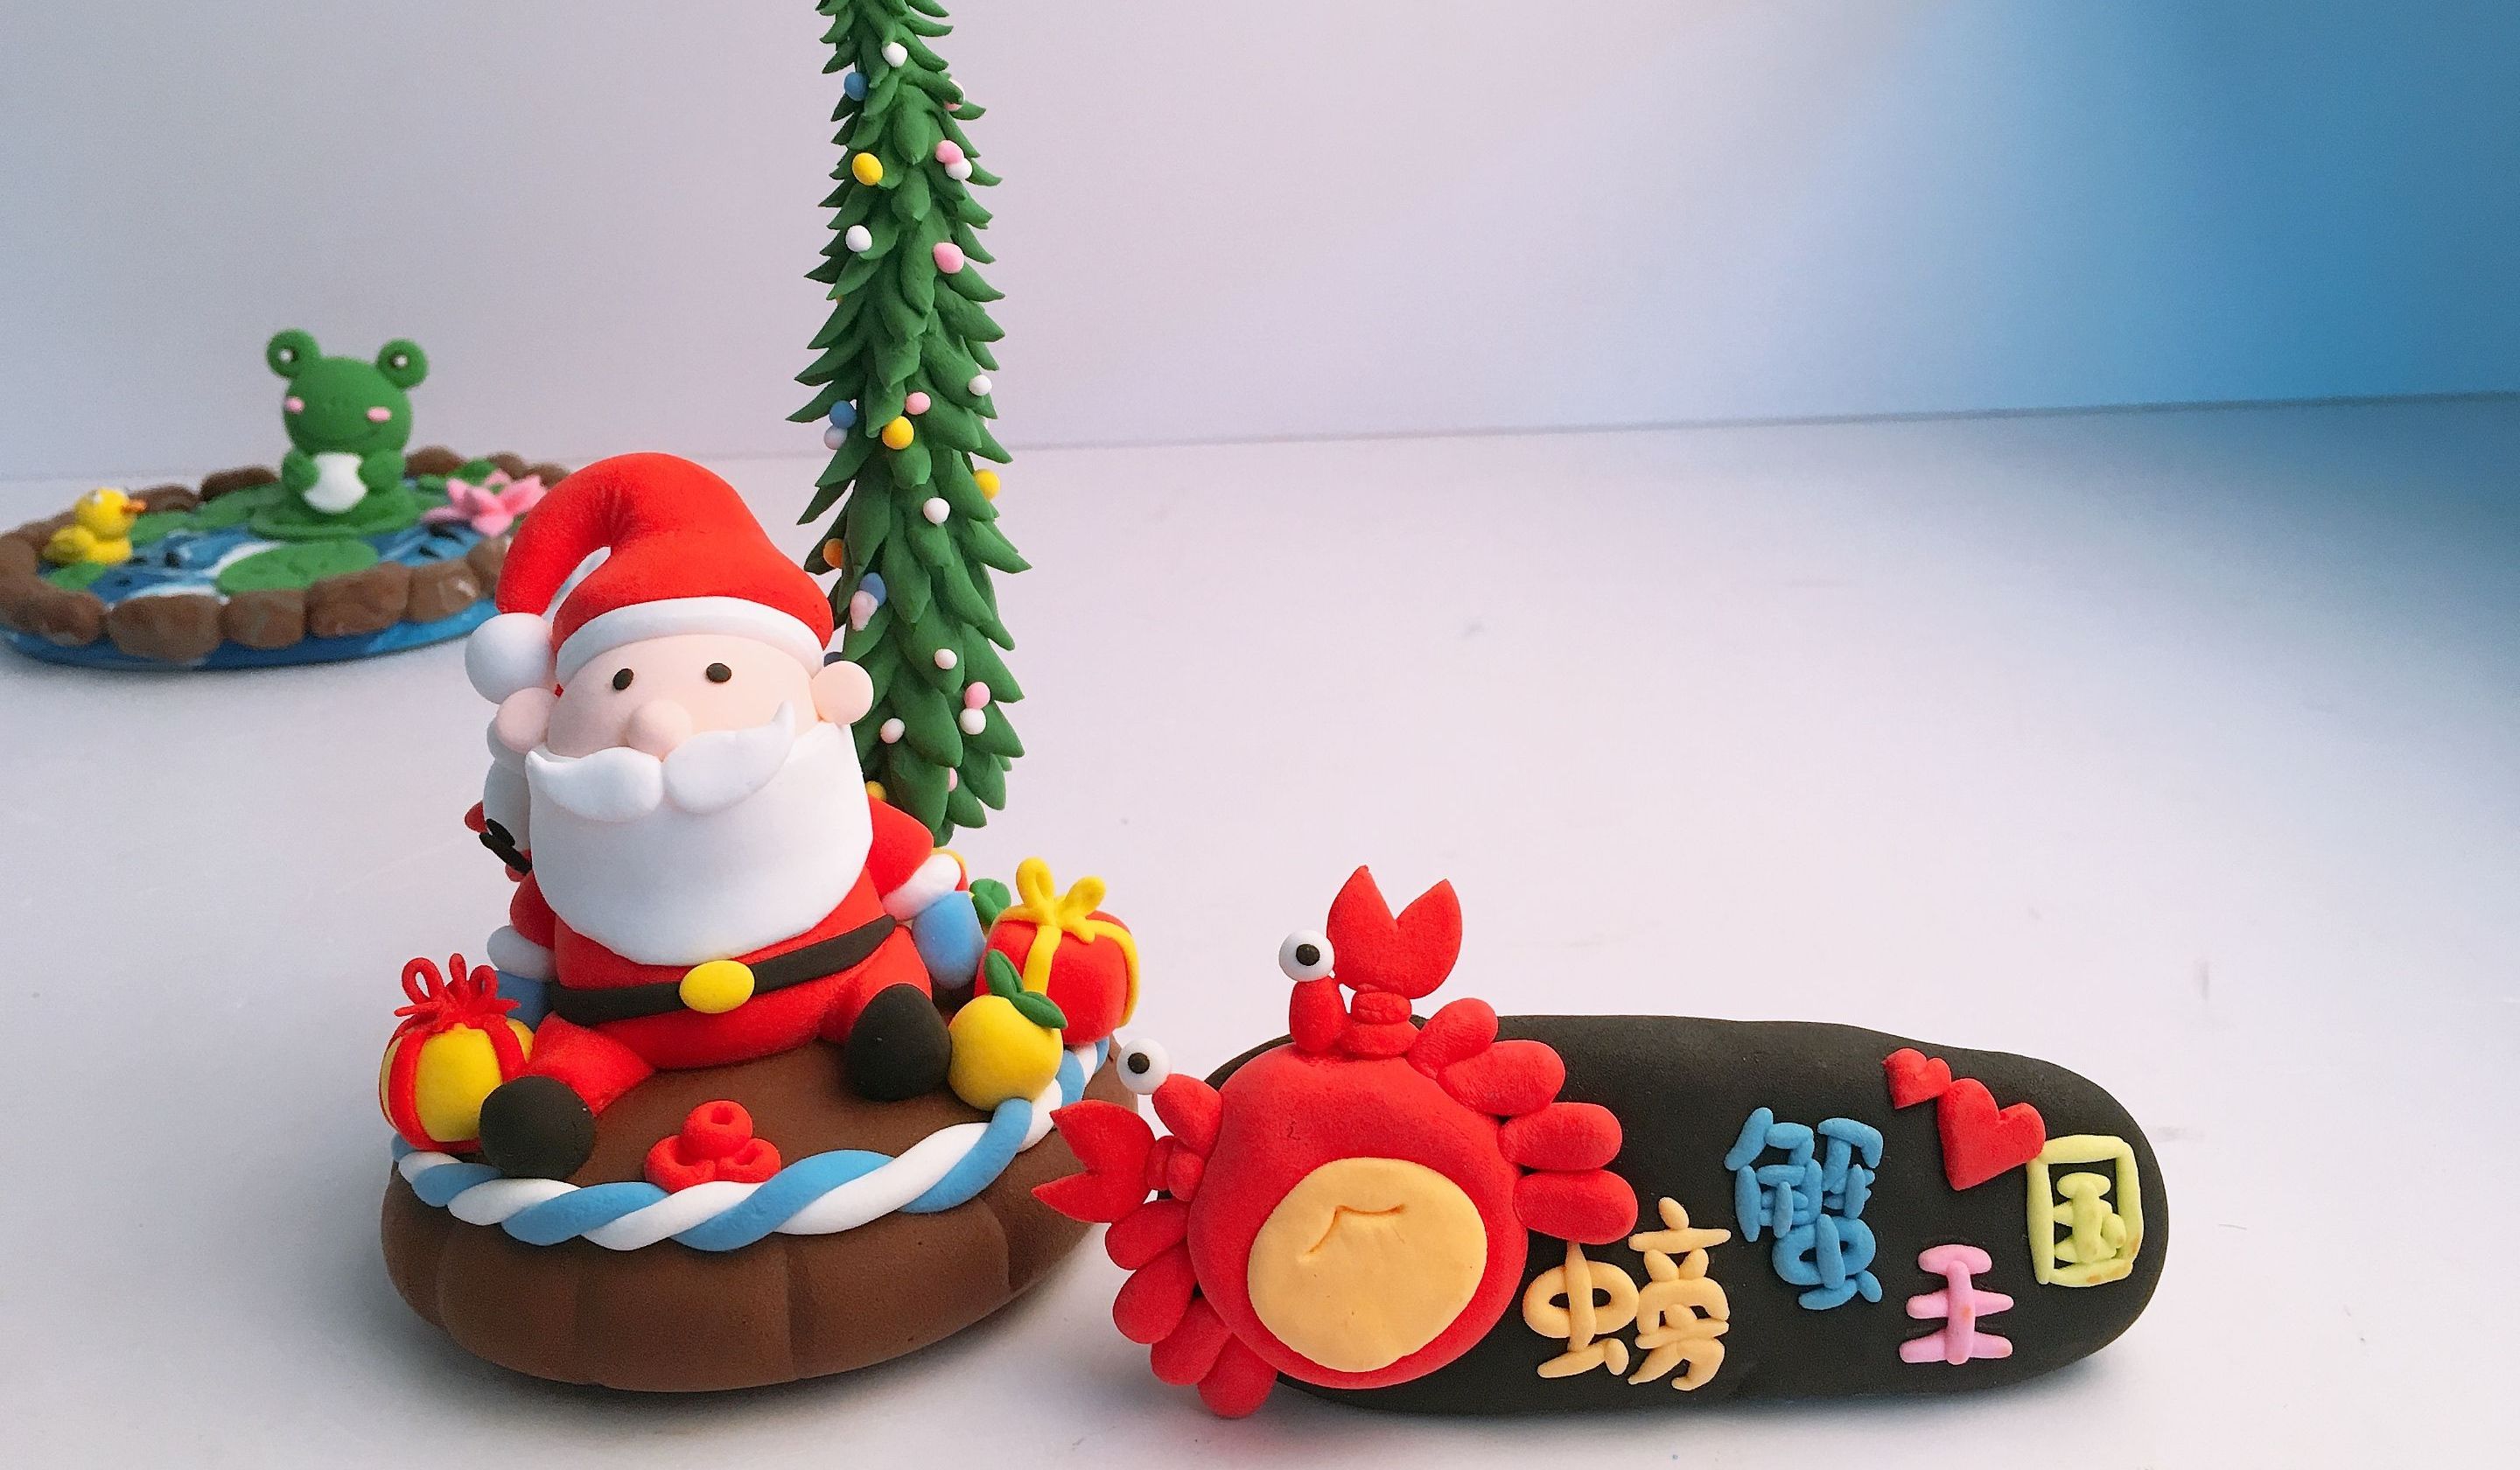 用黏土制作圣诞老人车载装饰真的太漂亮了········